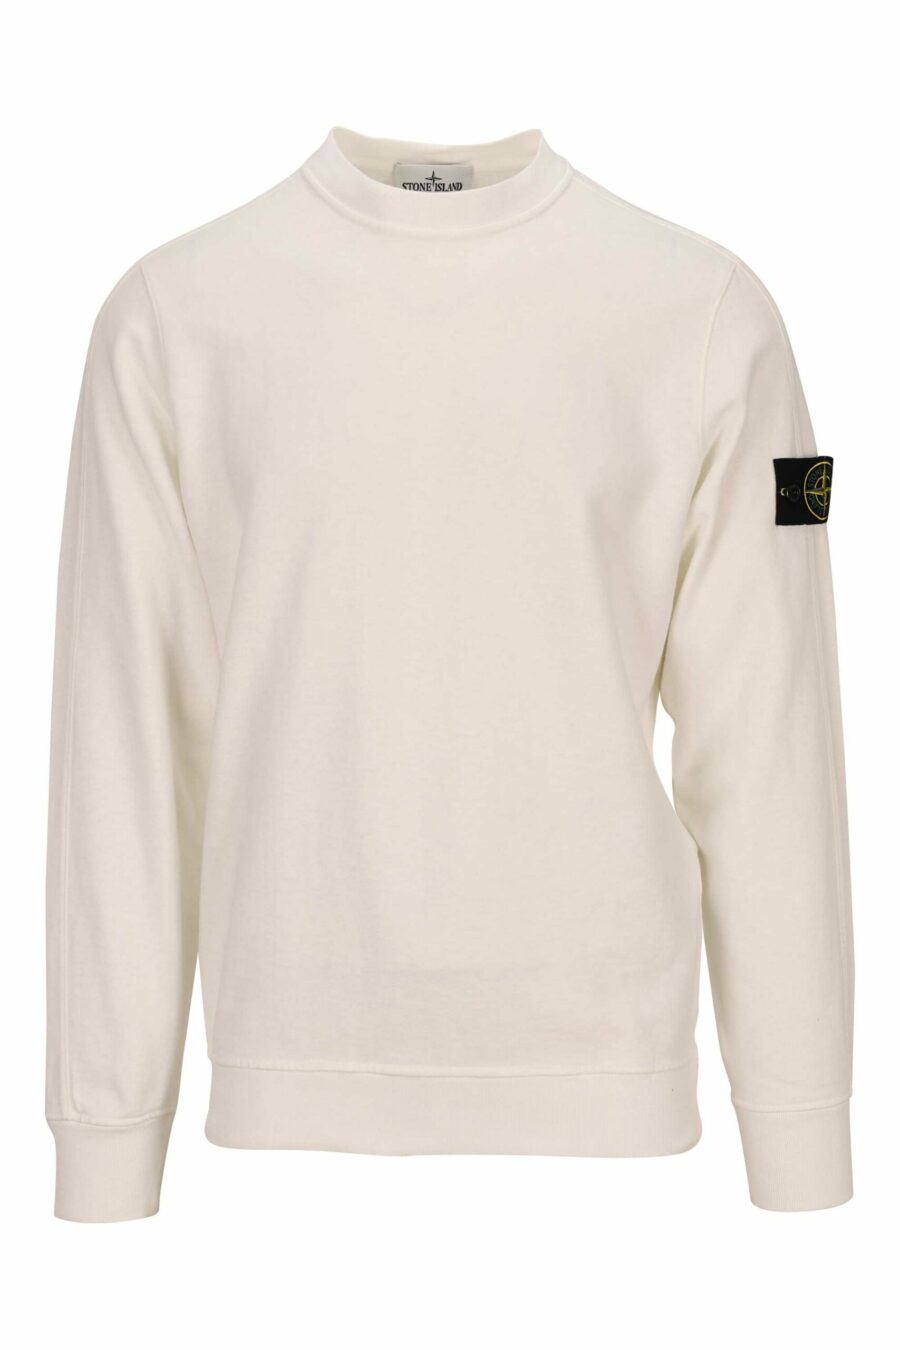 Weißes Sweatshirt mit Logo-Kompass-Aufnäher - 8052572901874 skaliert